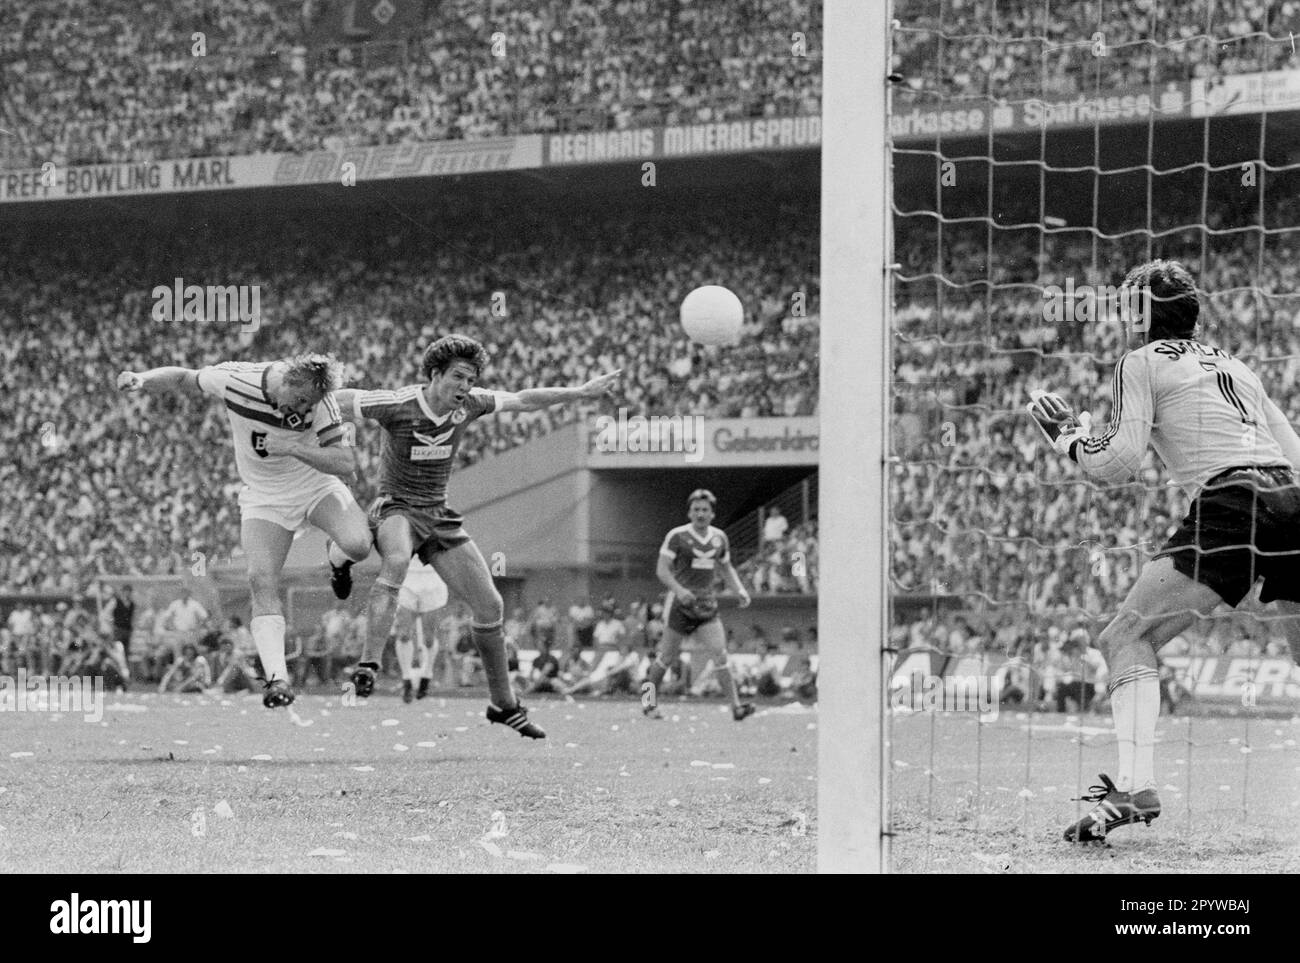 FC Schalke 04 - Hamburger SV 1:2 / HSV ainsi Champion d'Allemagne/04.06.1983/ Horst Hrubesch keps but pour 0:1 contre TW Junghans [traduction automatique] Banque D'Images